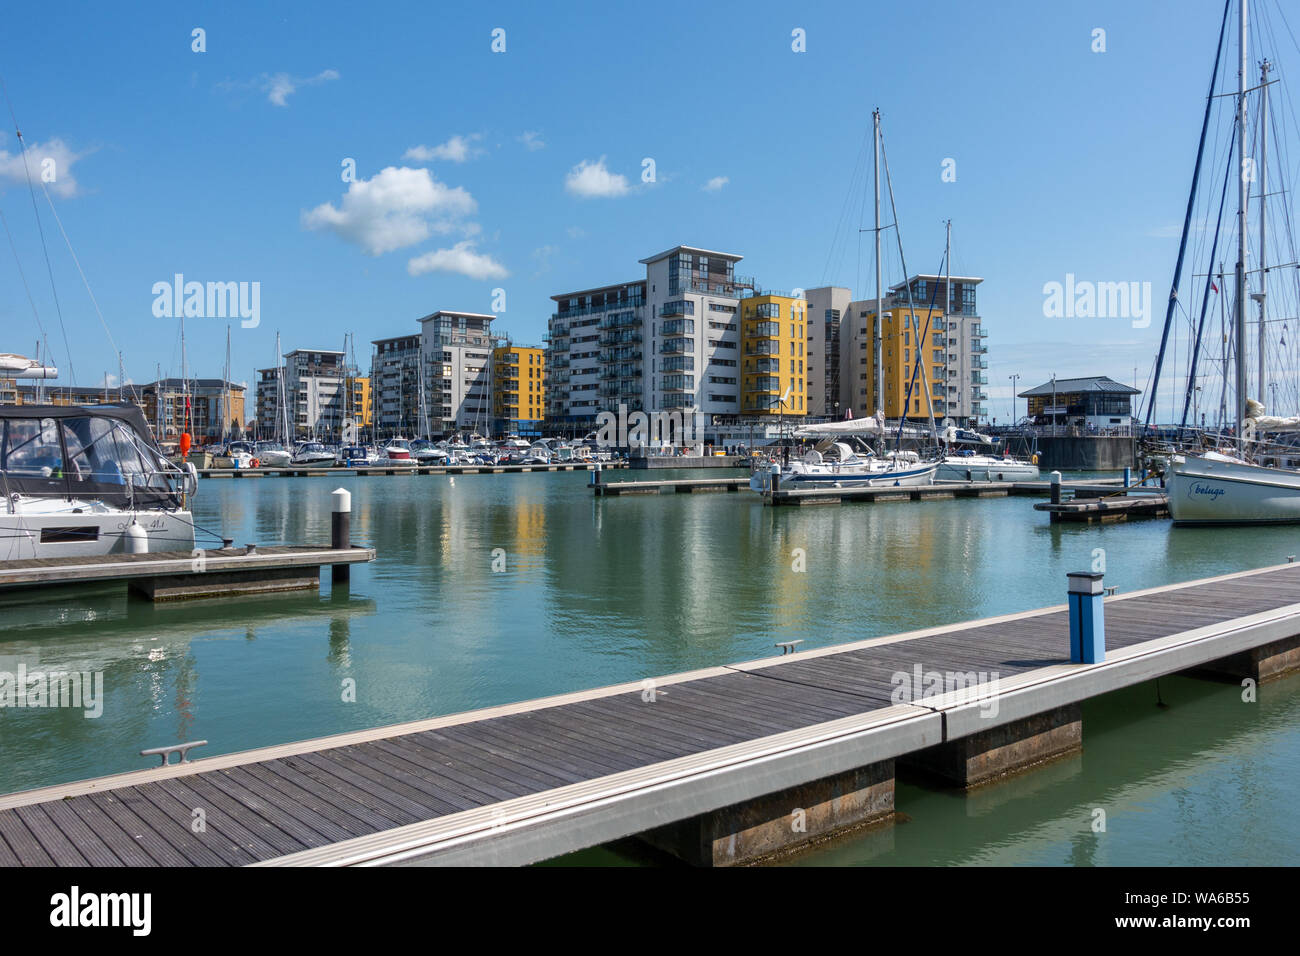 Moorings, bateaux et les appartements, Souverain Marina Harbour, Eastbourne, East Sussex, England, UK Banque D'Images